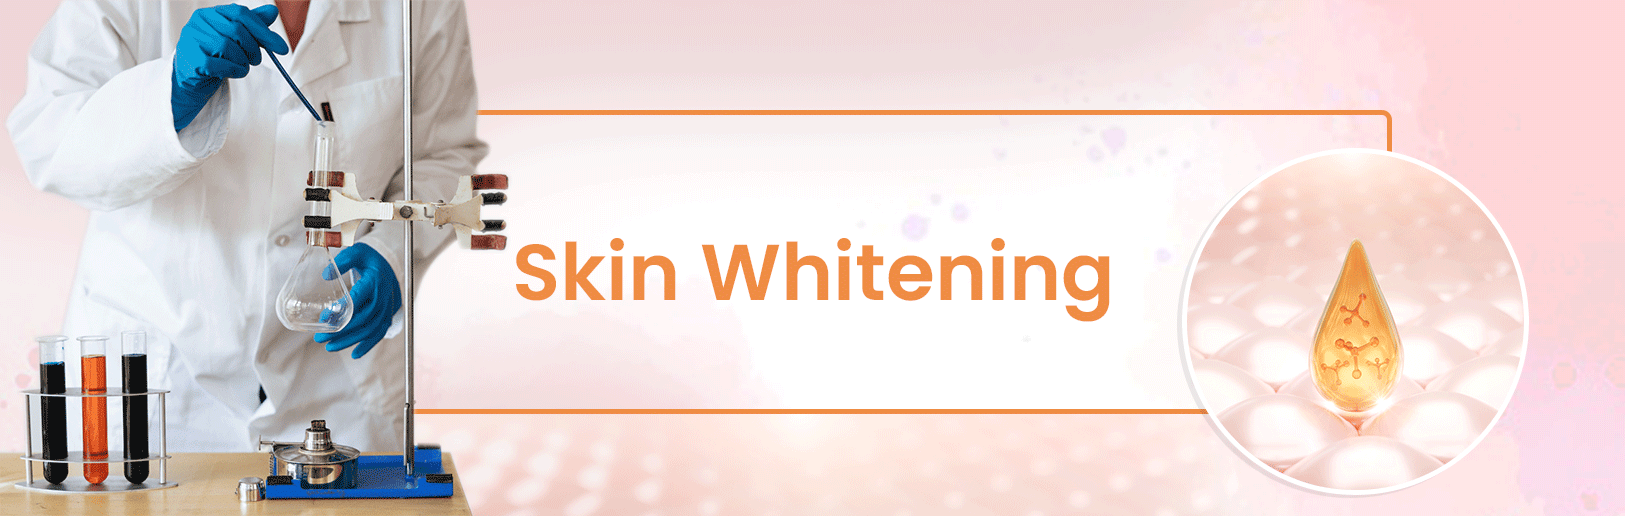 Whitening / Skin-lightening Cosmetic Ingredients